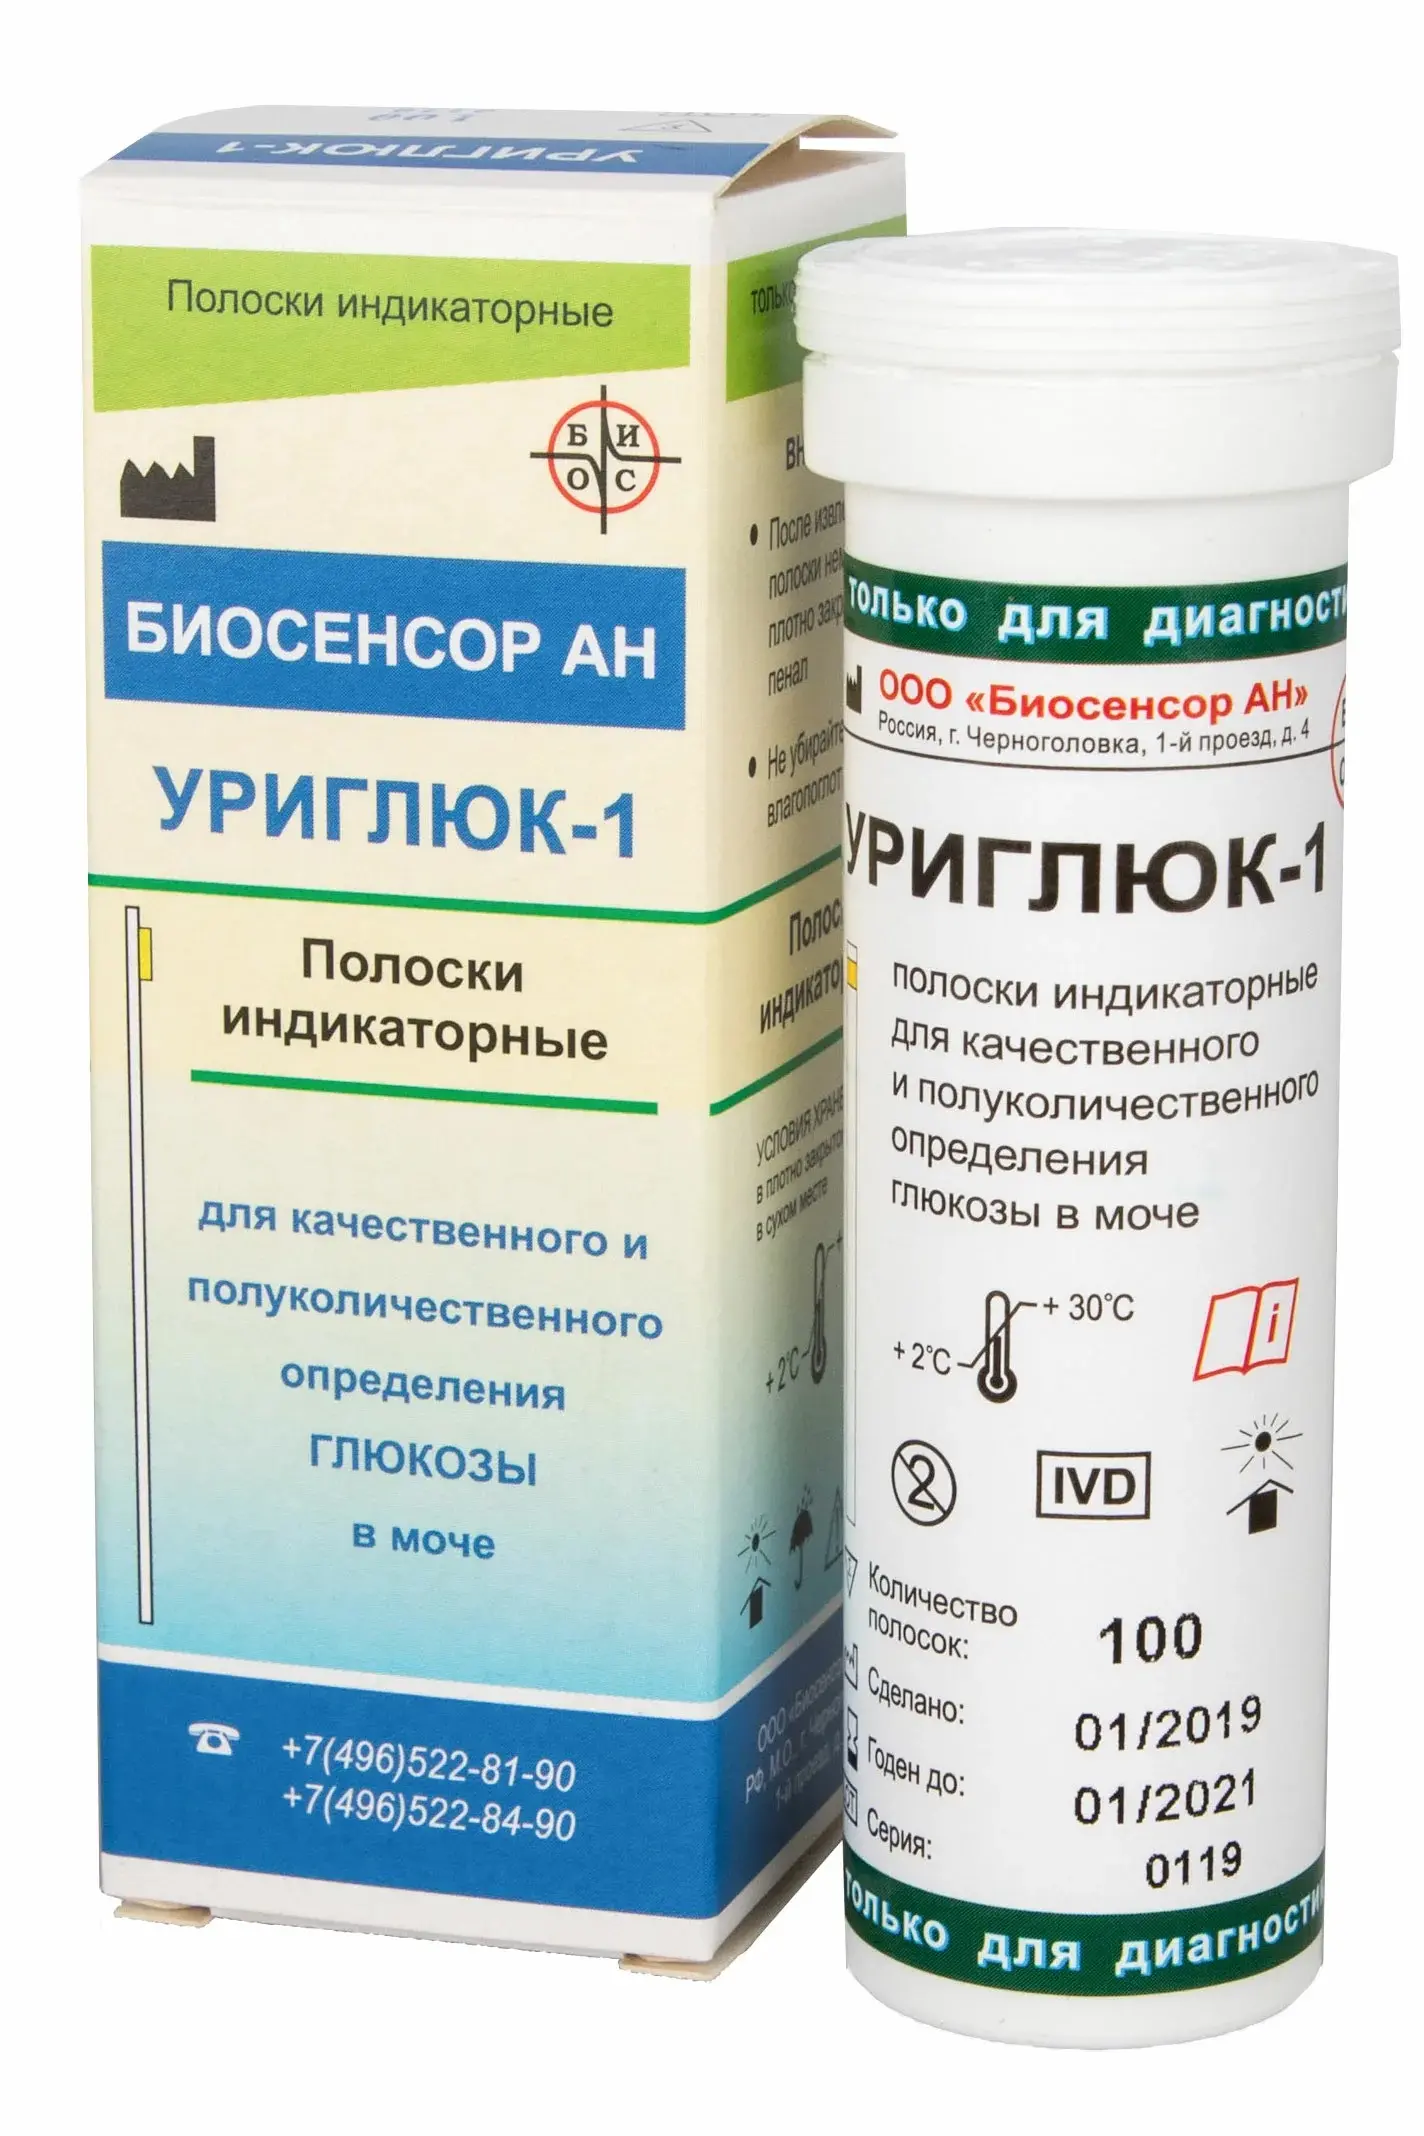 Уриглюк тест-полоски-1 на определение глюкозы в моче N50 (Биосенсор АН, РФ)